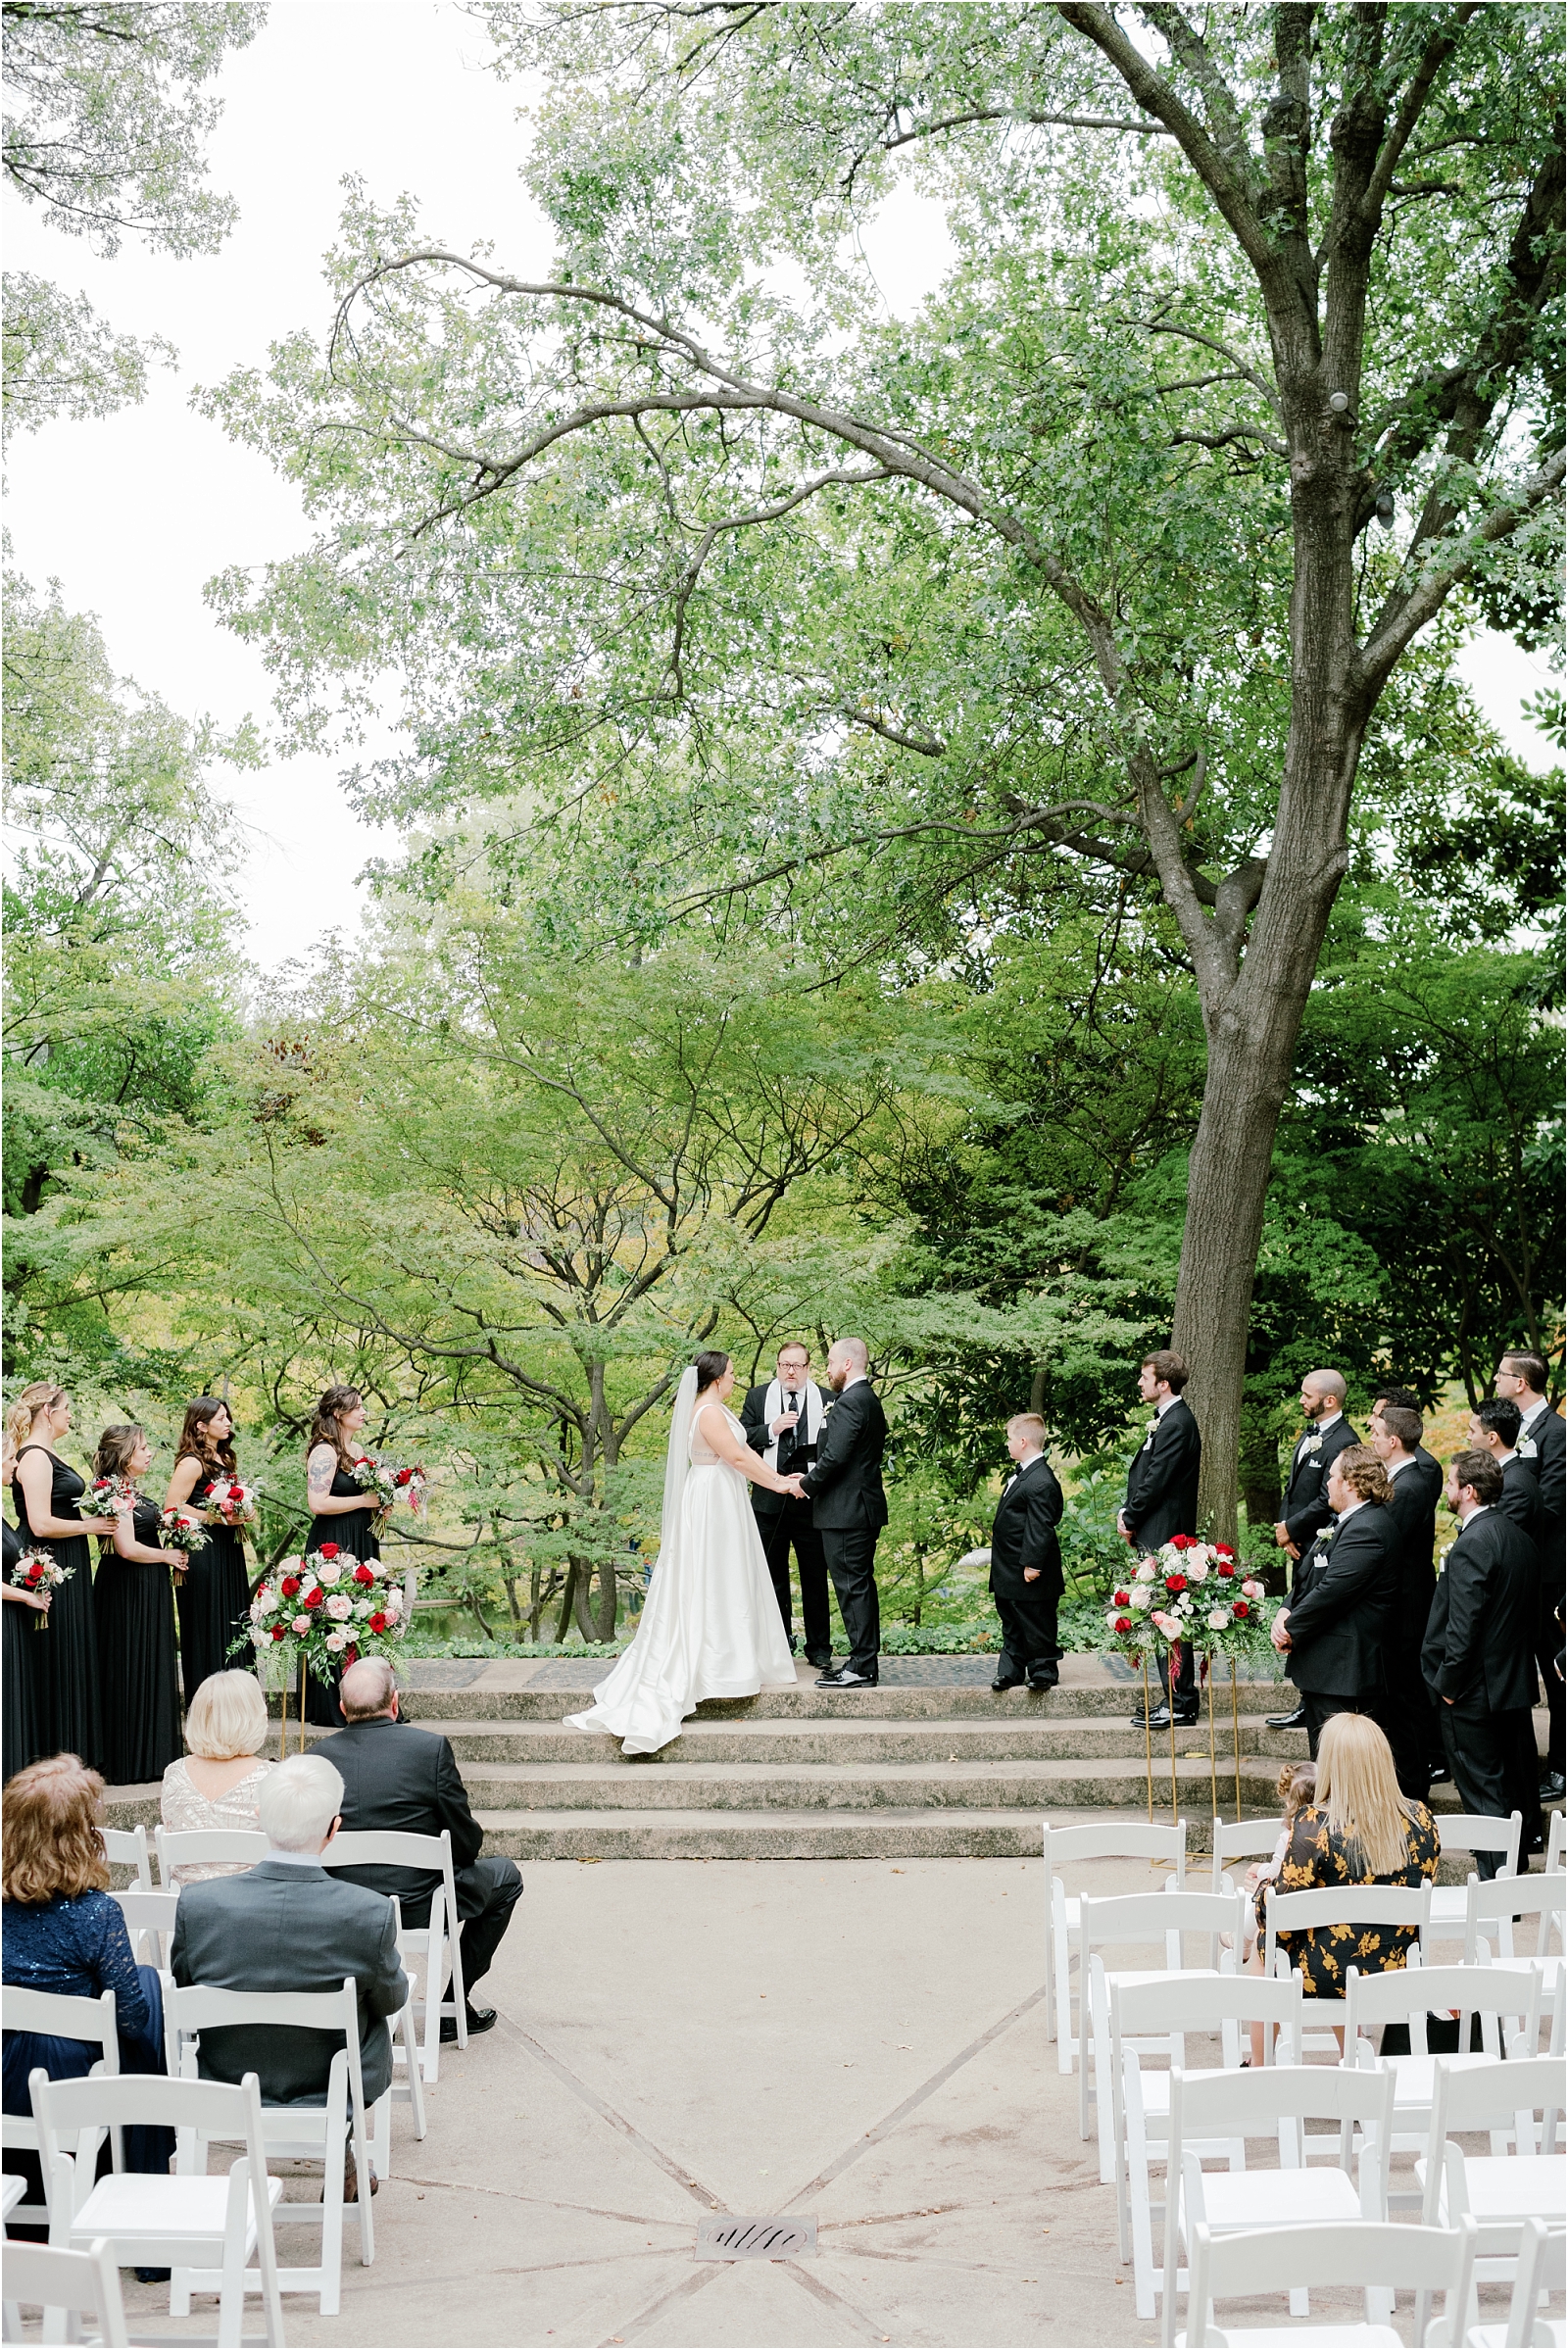  Fort Worth Botanic Garden Wedding